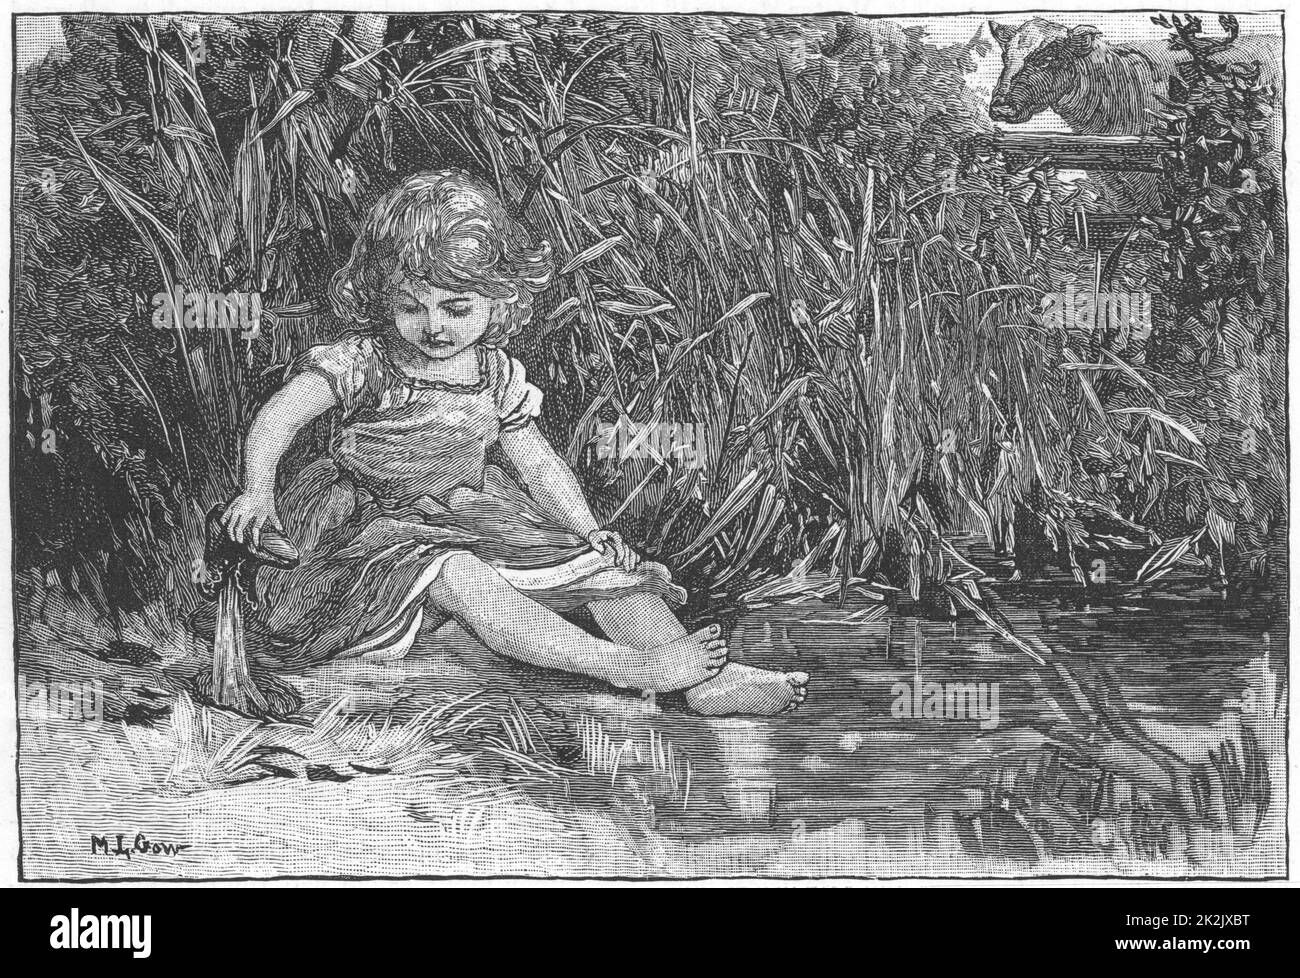 'Silas Marner' di George Eliot, 1861. Eppie, all'età di tre anni, è scivolato fuori dalla casa mentre Silas Marner era occupato, e si diverte presso lo stagno. Illustrazione di Mary L.Gow (1851-1929) pubblicata nel 1882. Foto Stock